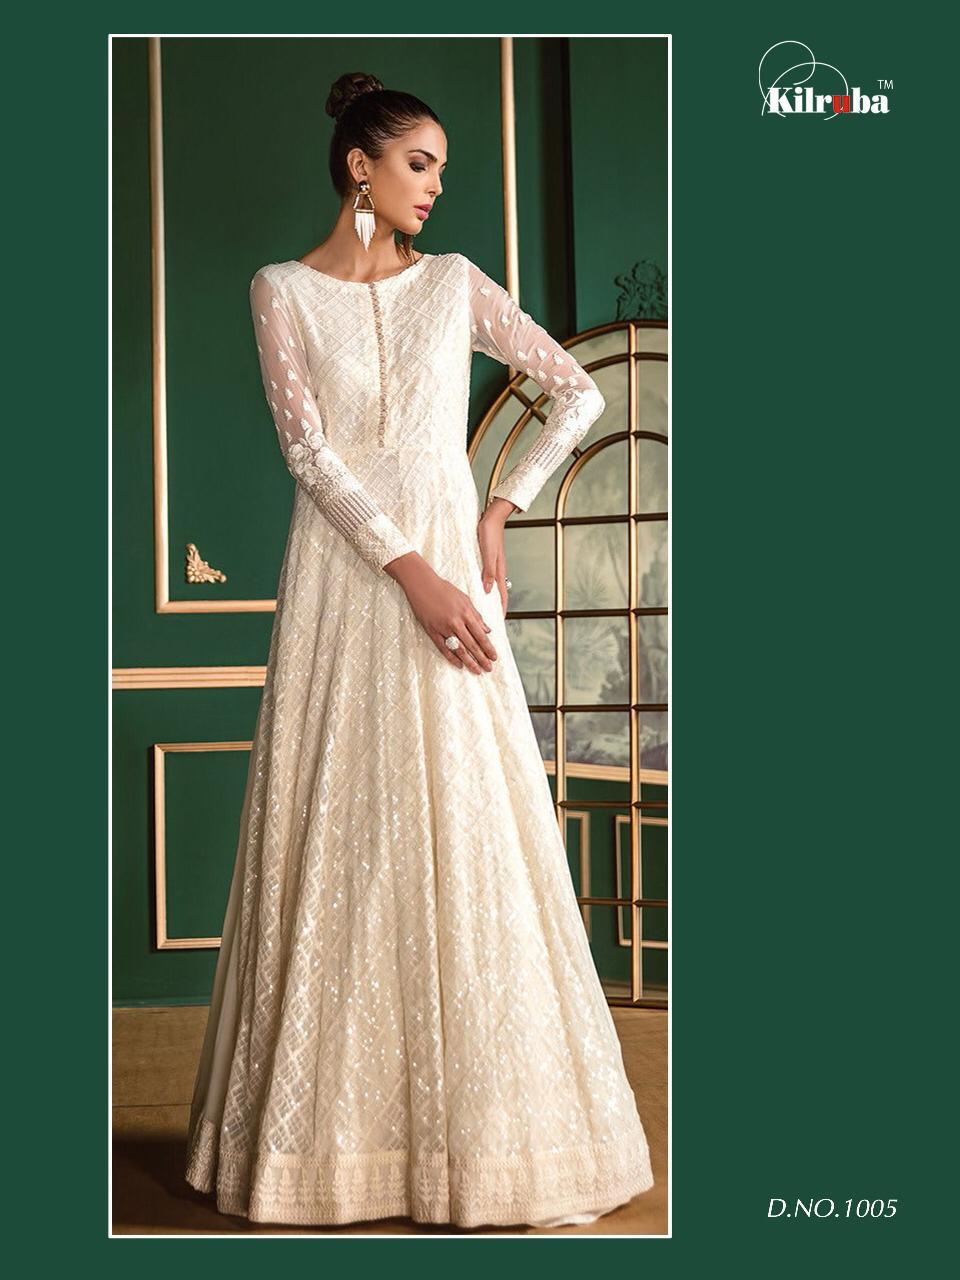 Kilruba Jannat White Luxury Collection 1005